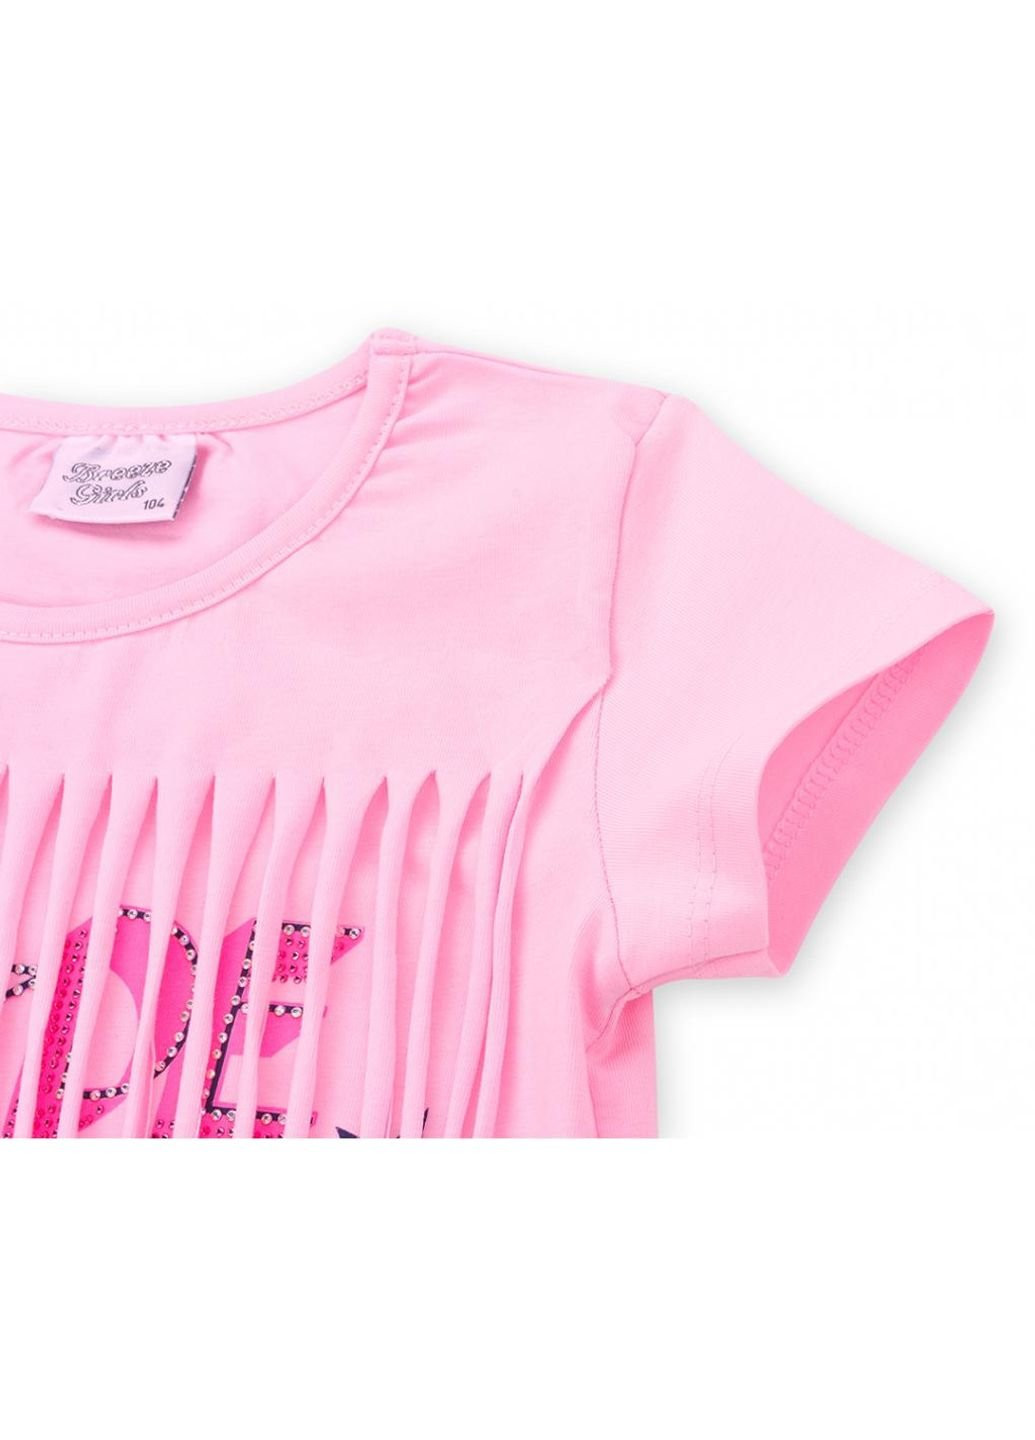 Синий летний набор детской одежды футболка со звездочками с шортами (9036-98g-pink) Breeze